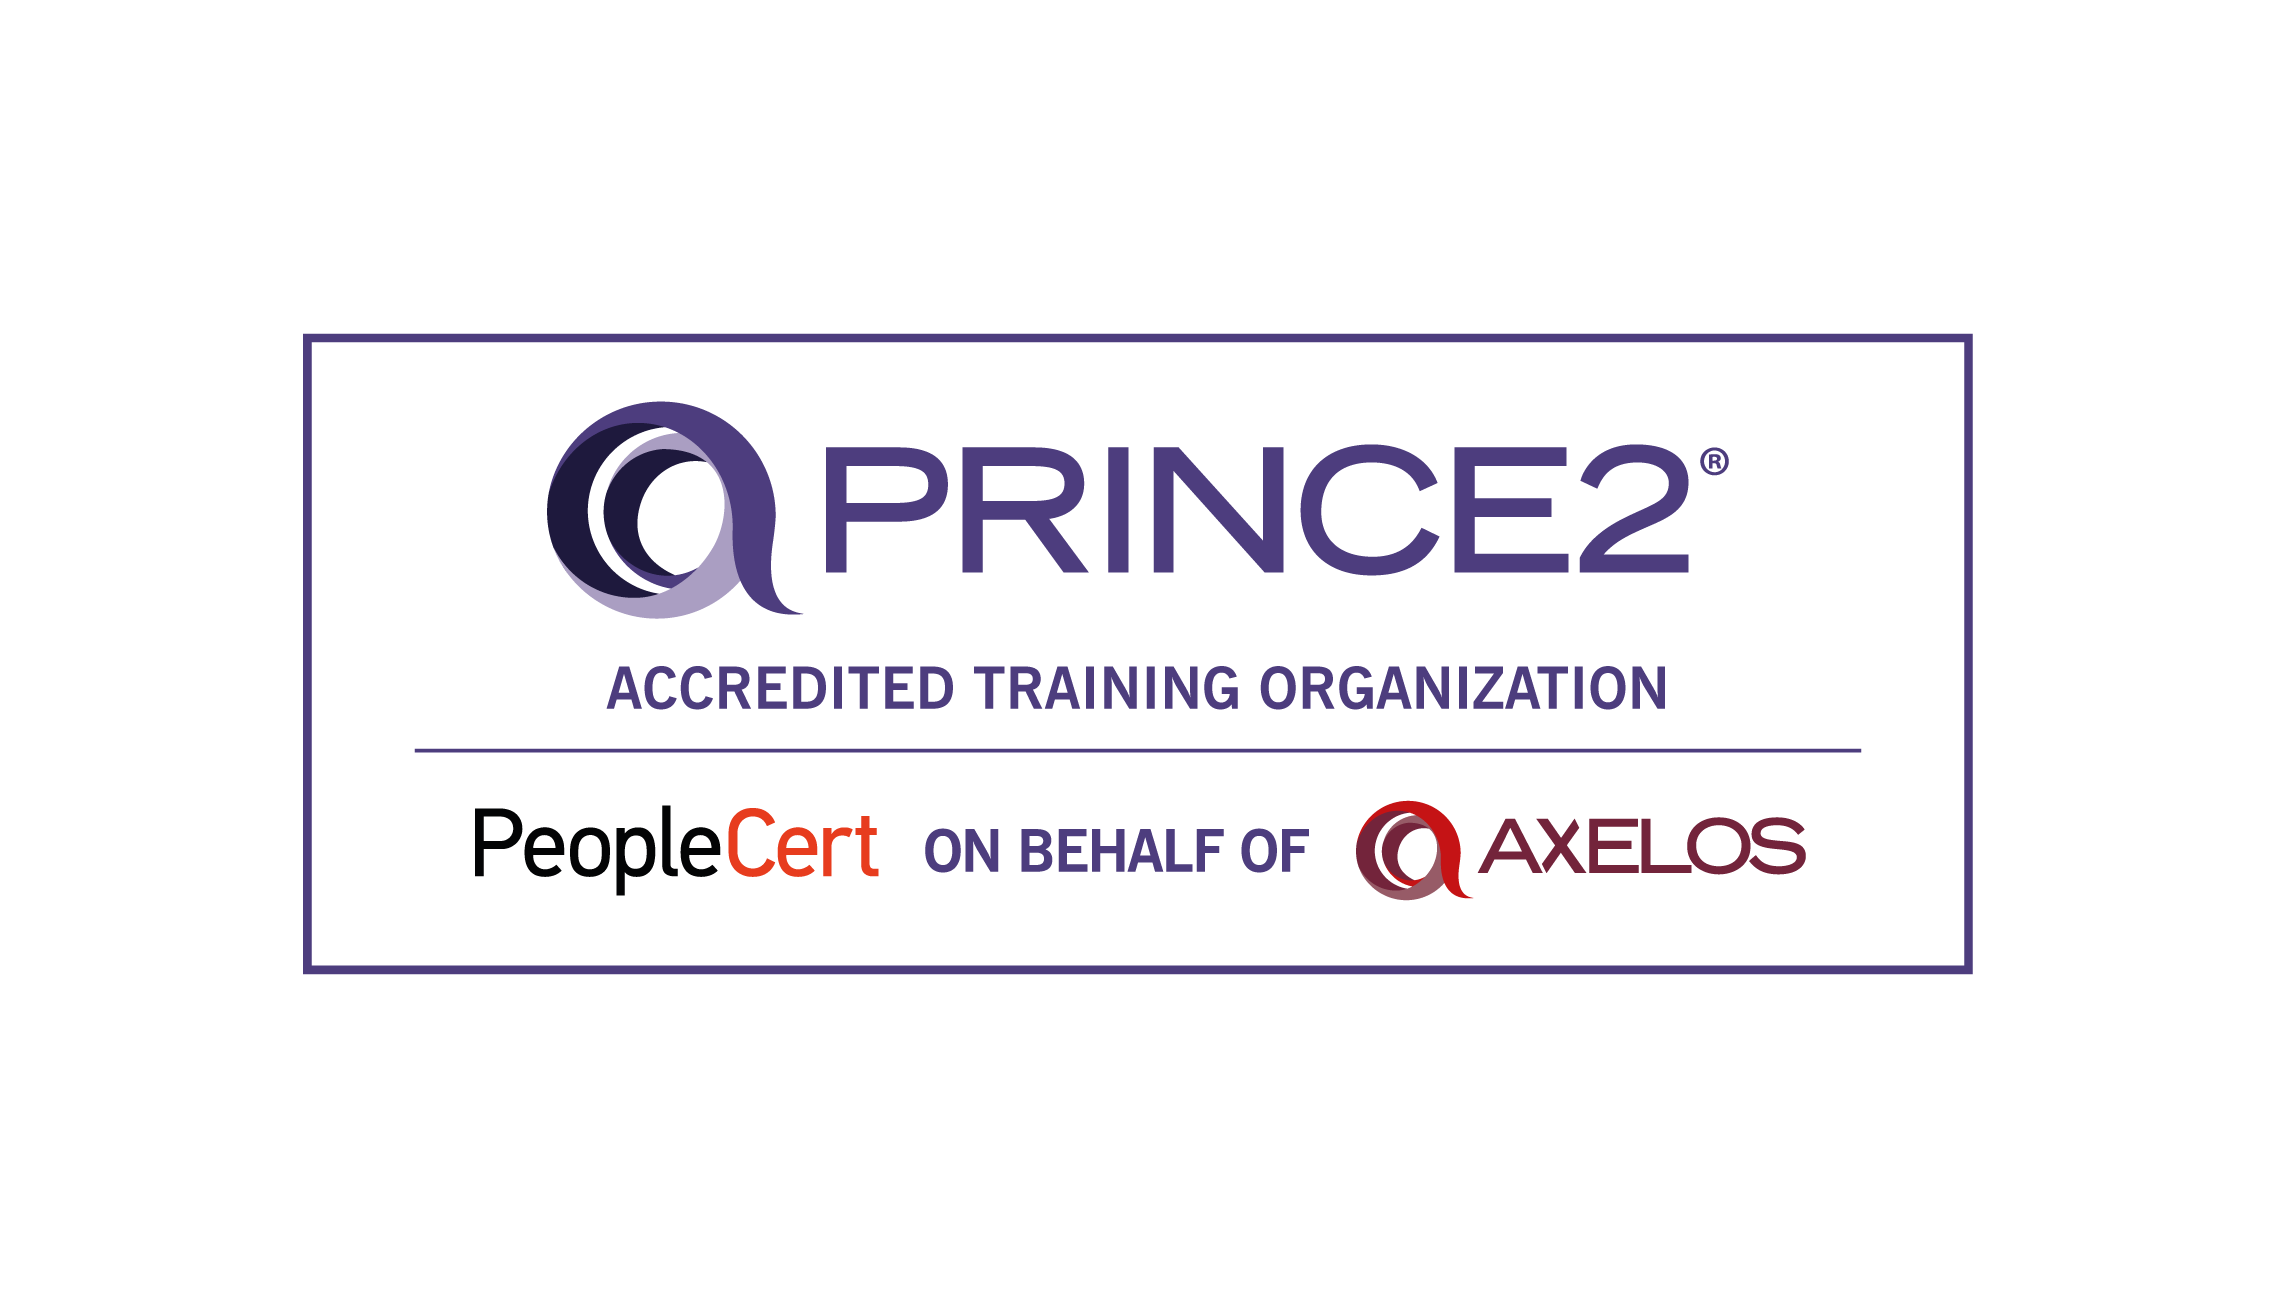 PRINCE2 Logo ATO